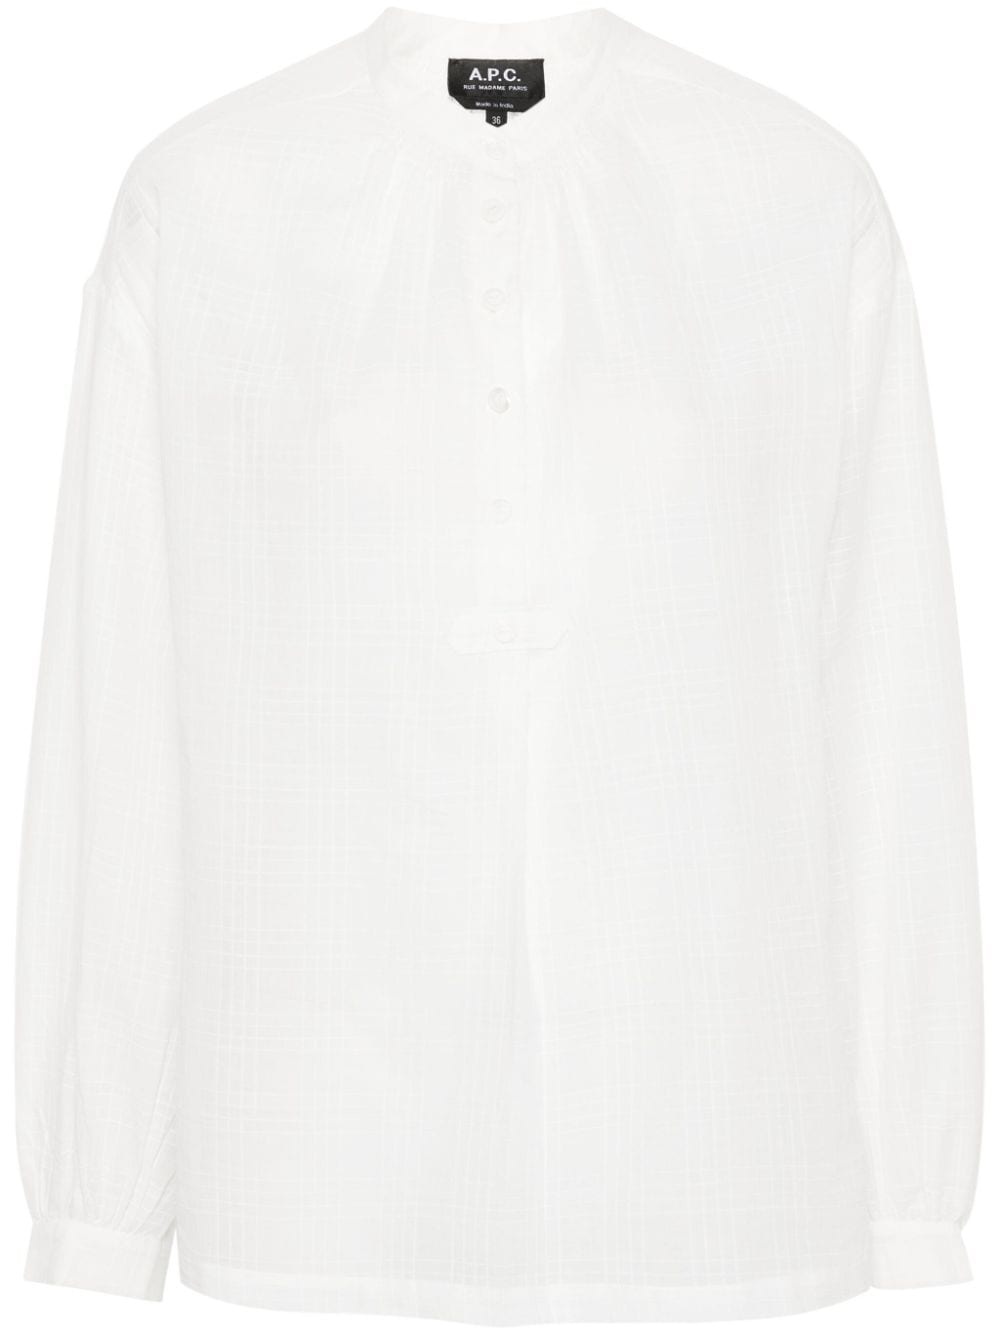 plaid-check cotton blouse - 1